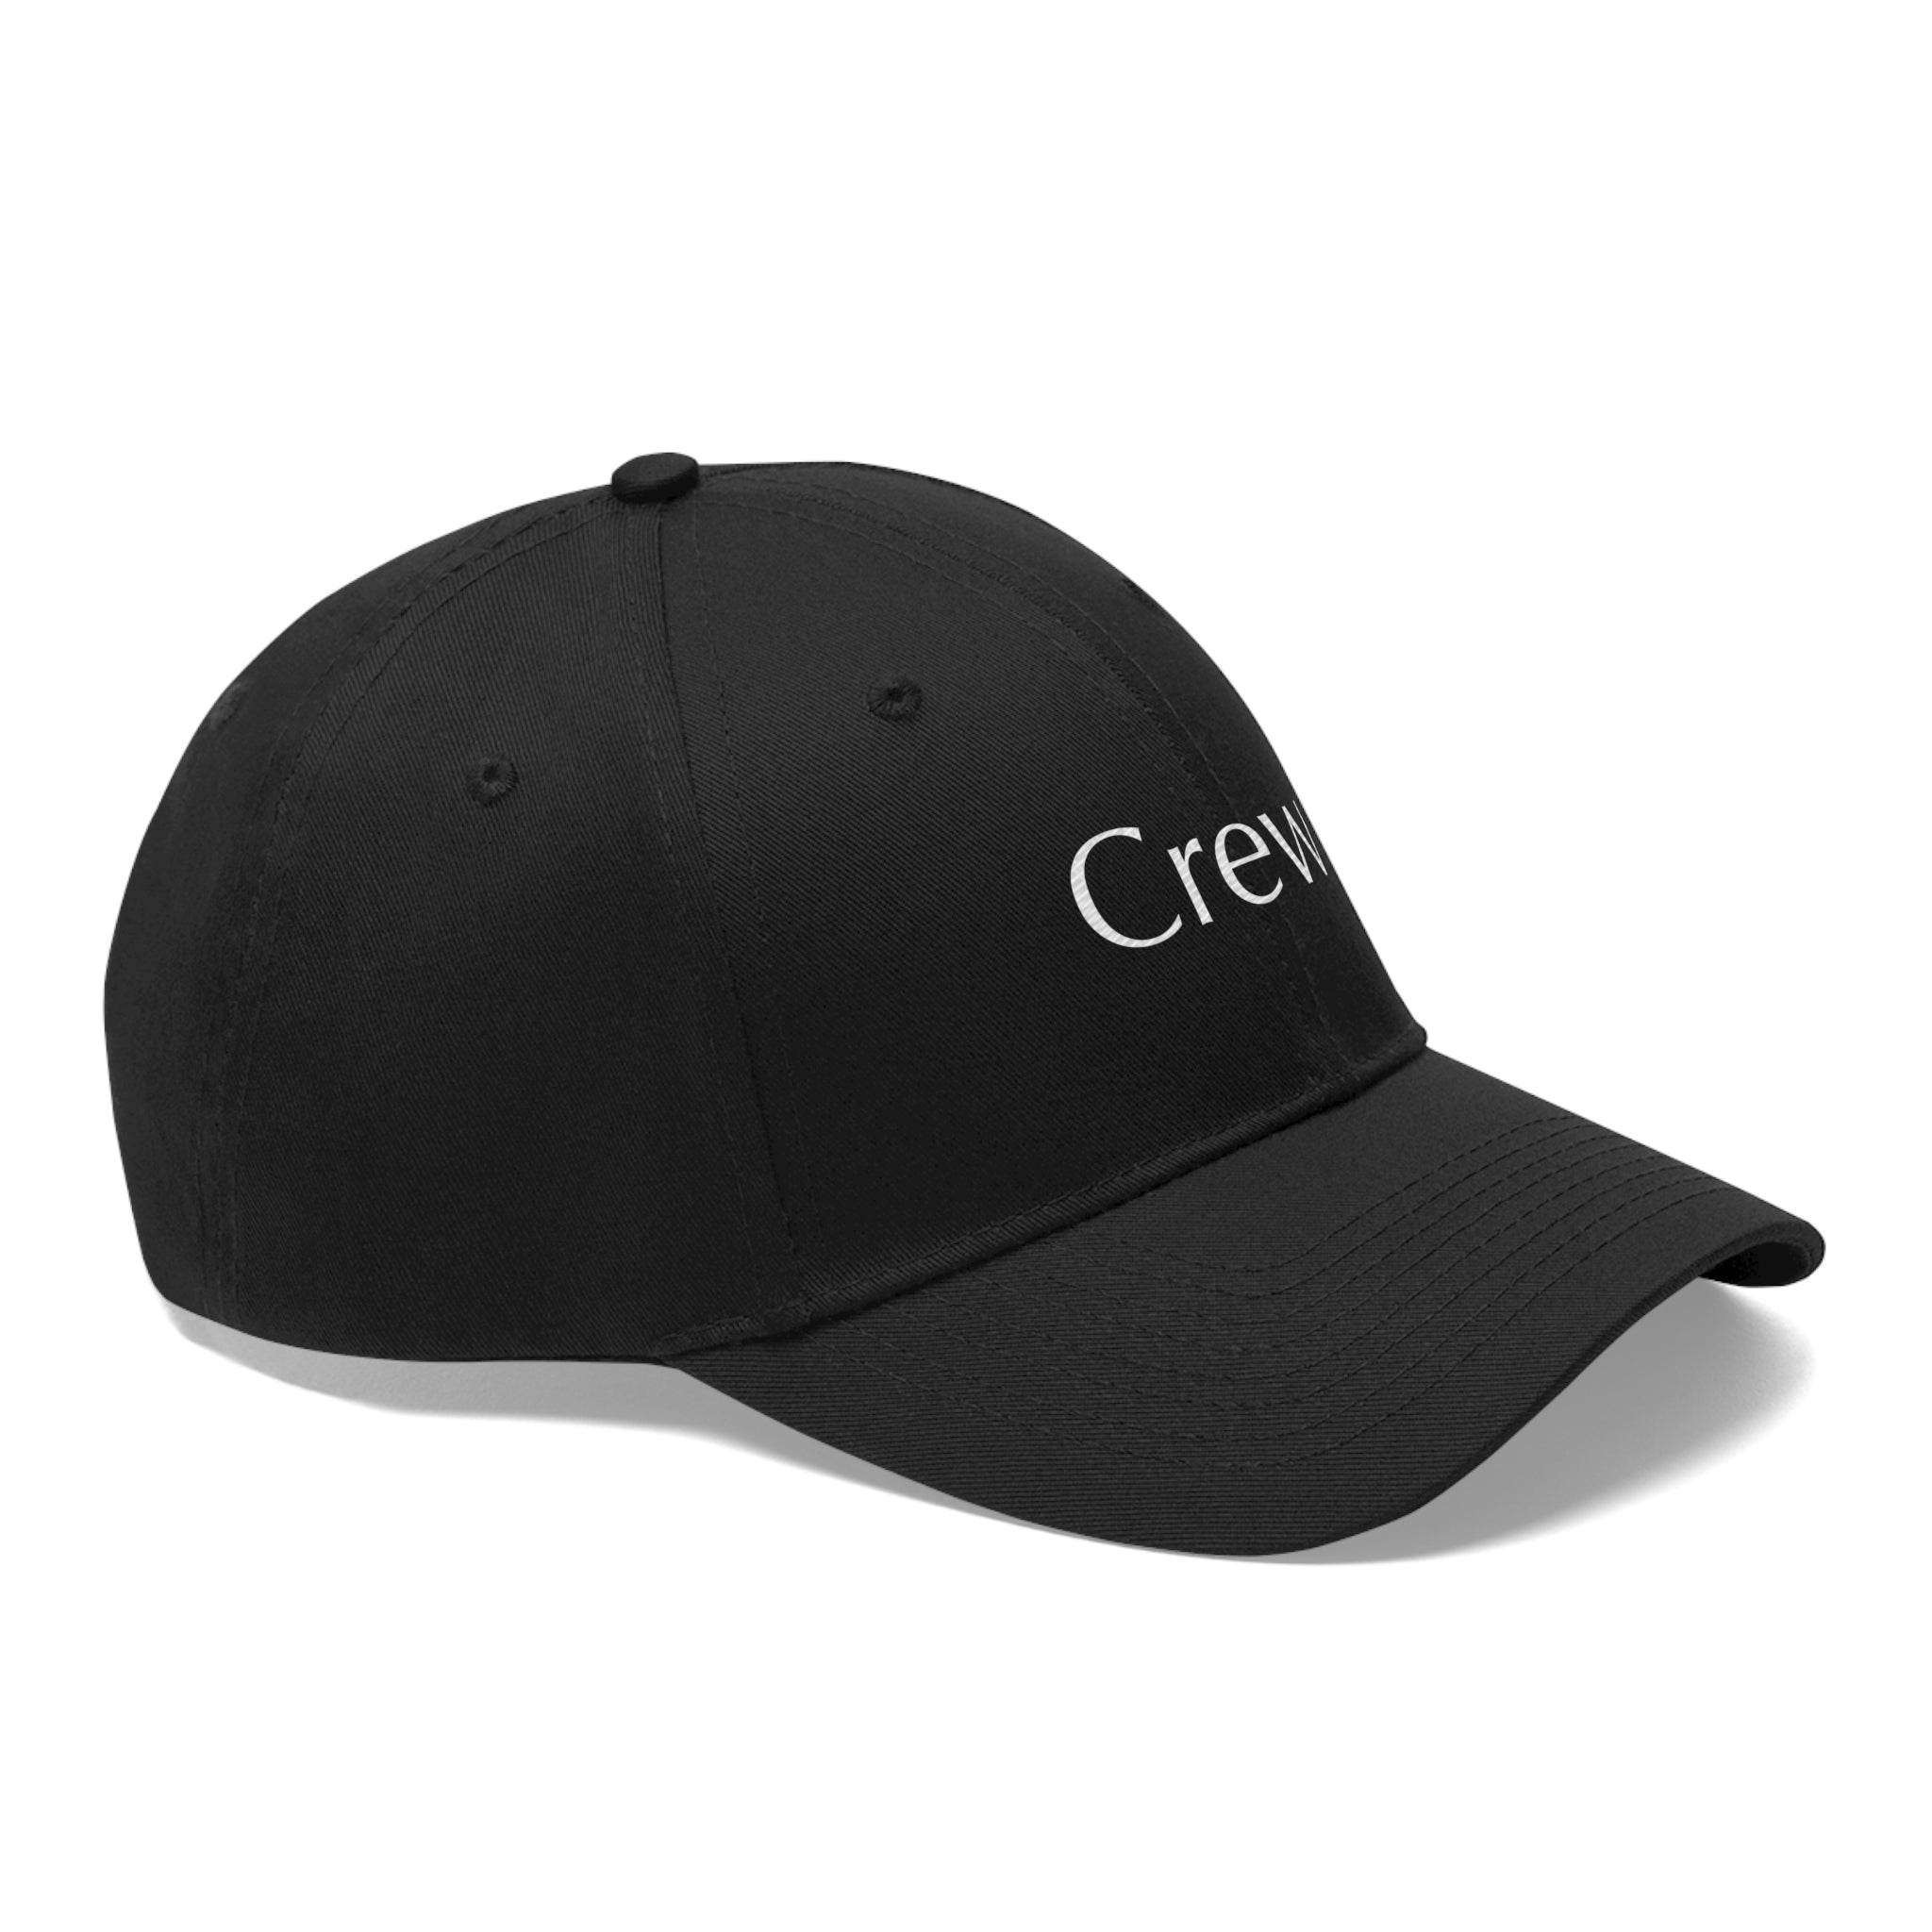 "Crew" Hat